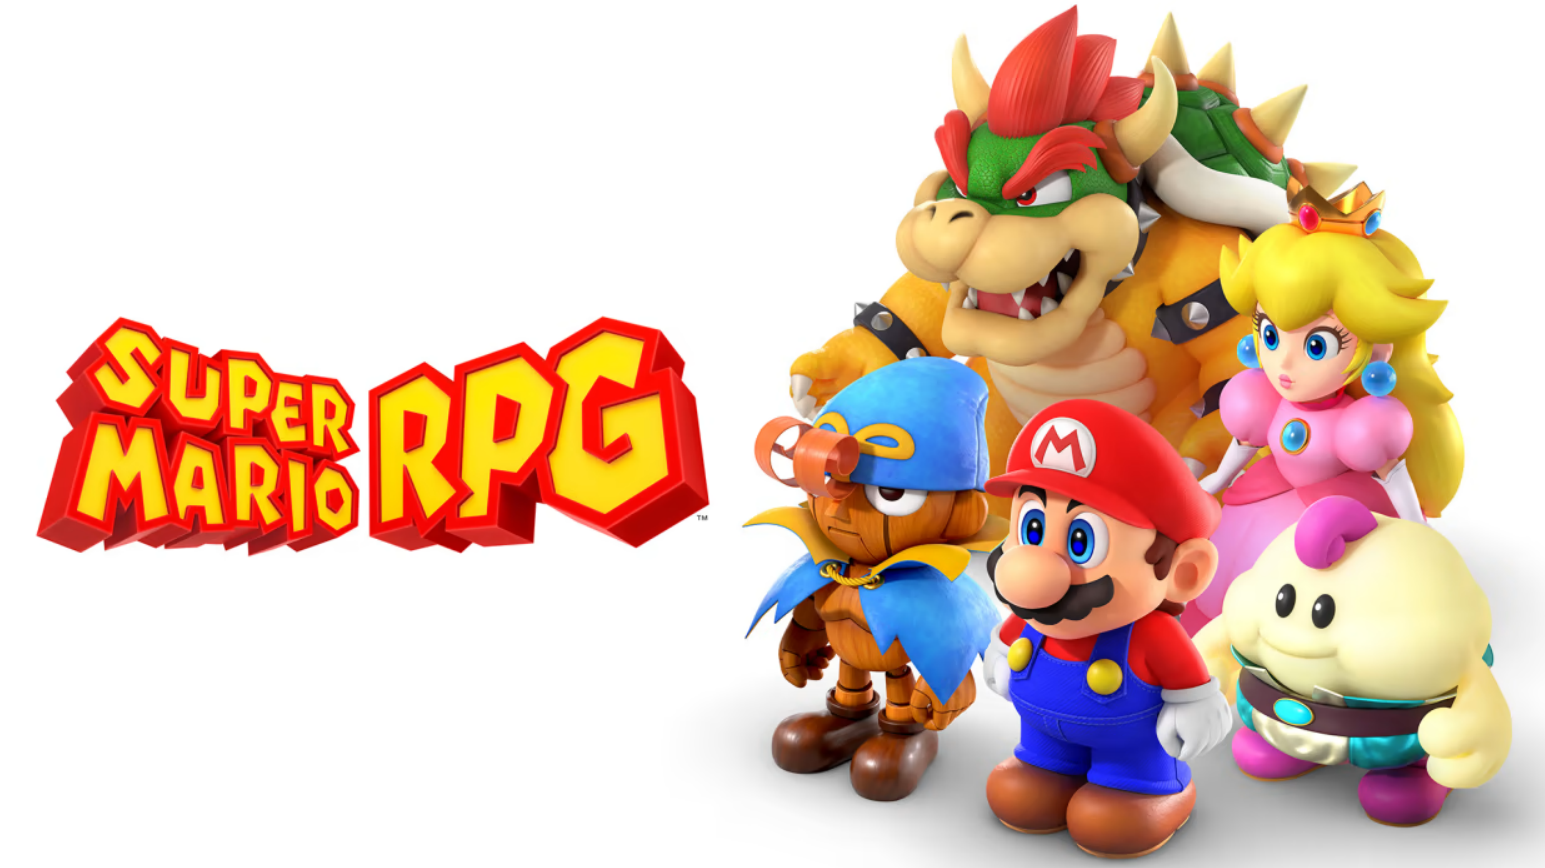 old rpg games Super Mario Bros. 3